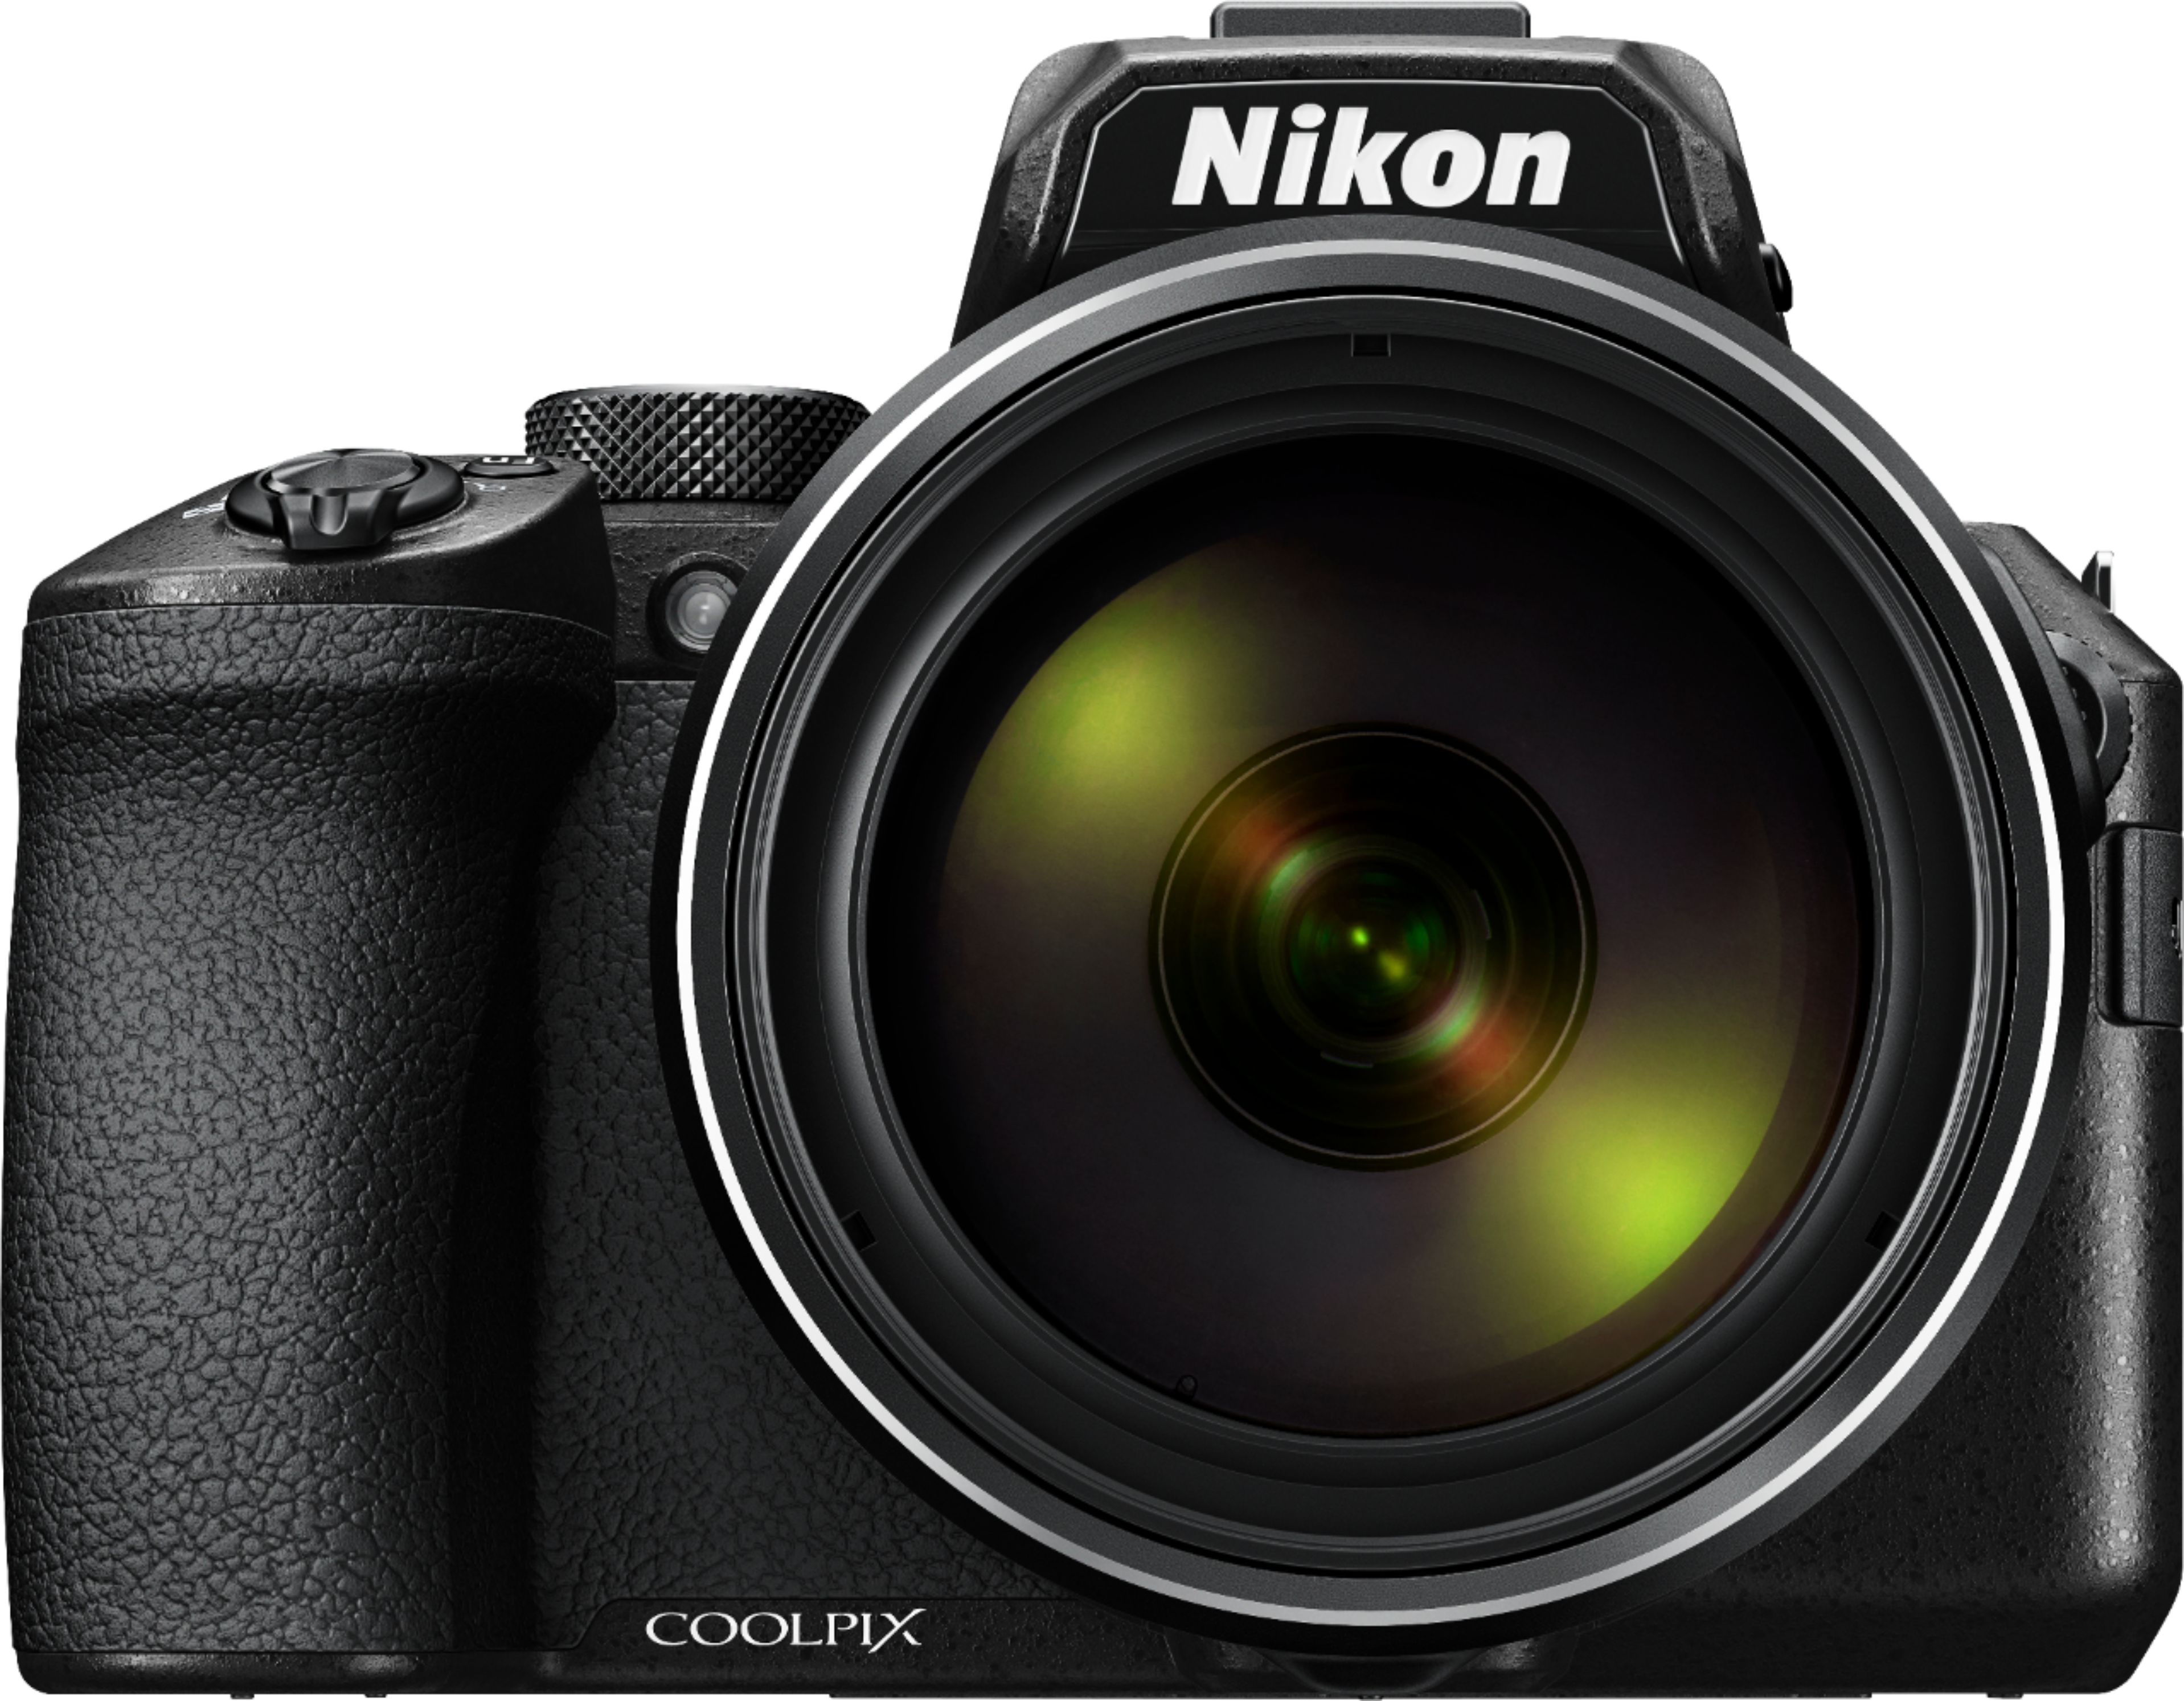 Manga Kanon Verlaten Nikon Coolpix P950 16.0-Megapixel Digital Camera Black 26532 - Best Buy